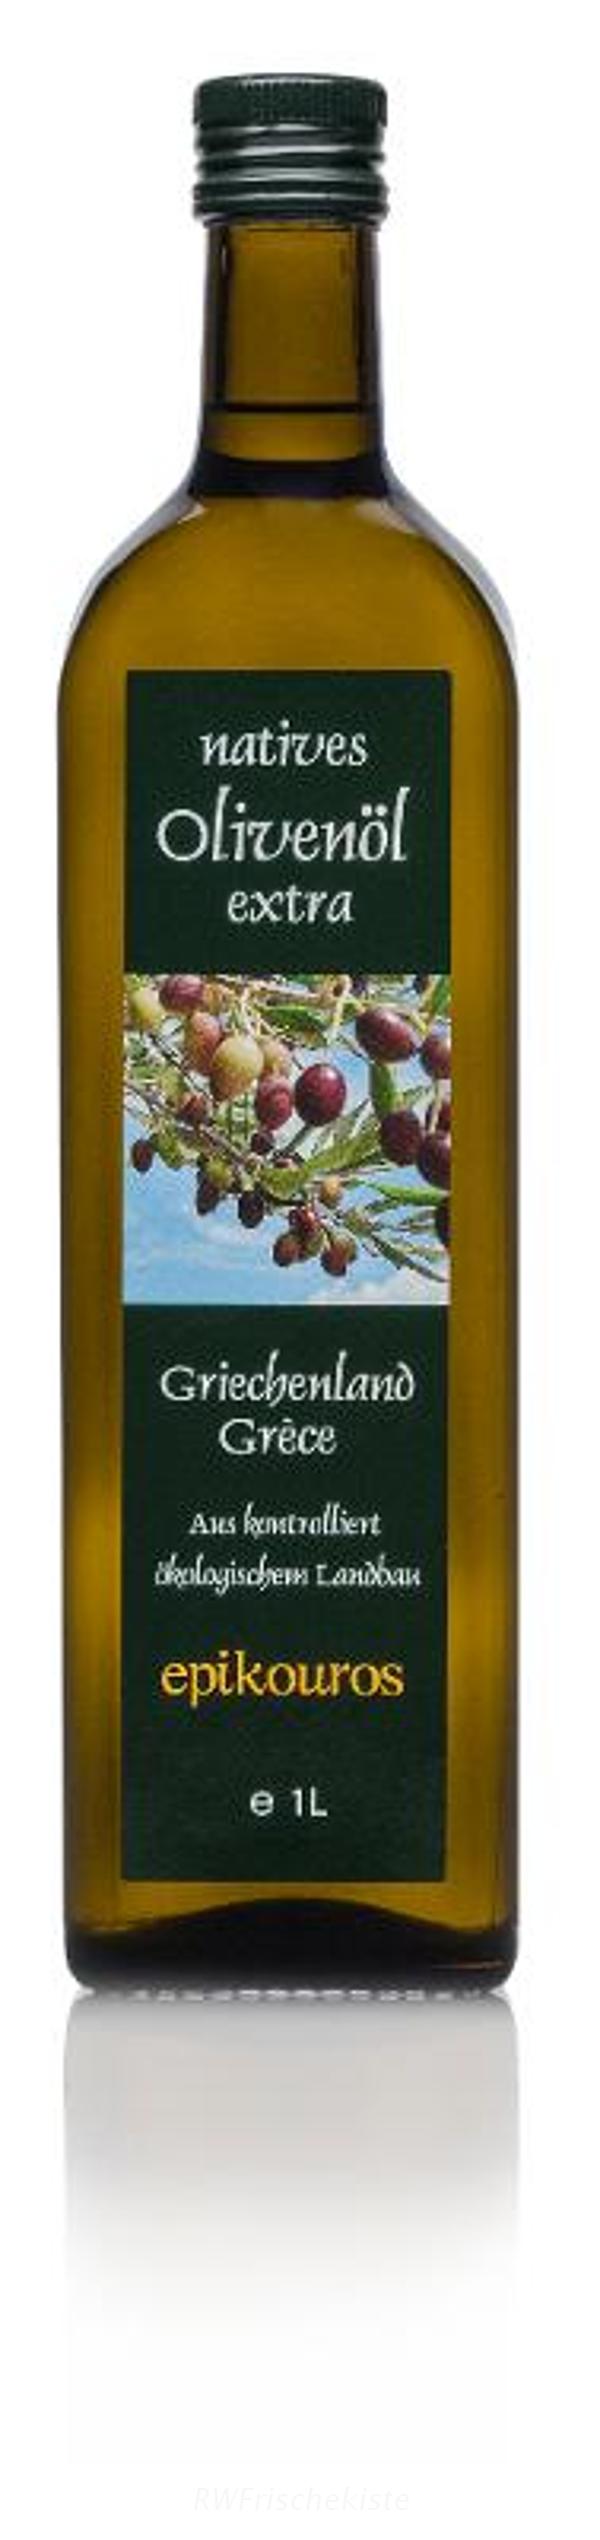 Produktfoto zu Olivenöl nativ extra aus Kalamata, GR